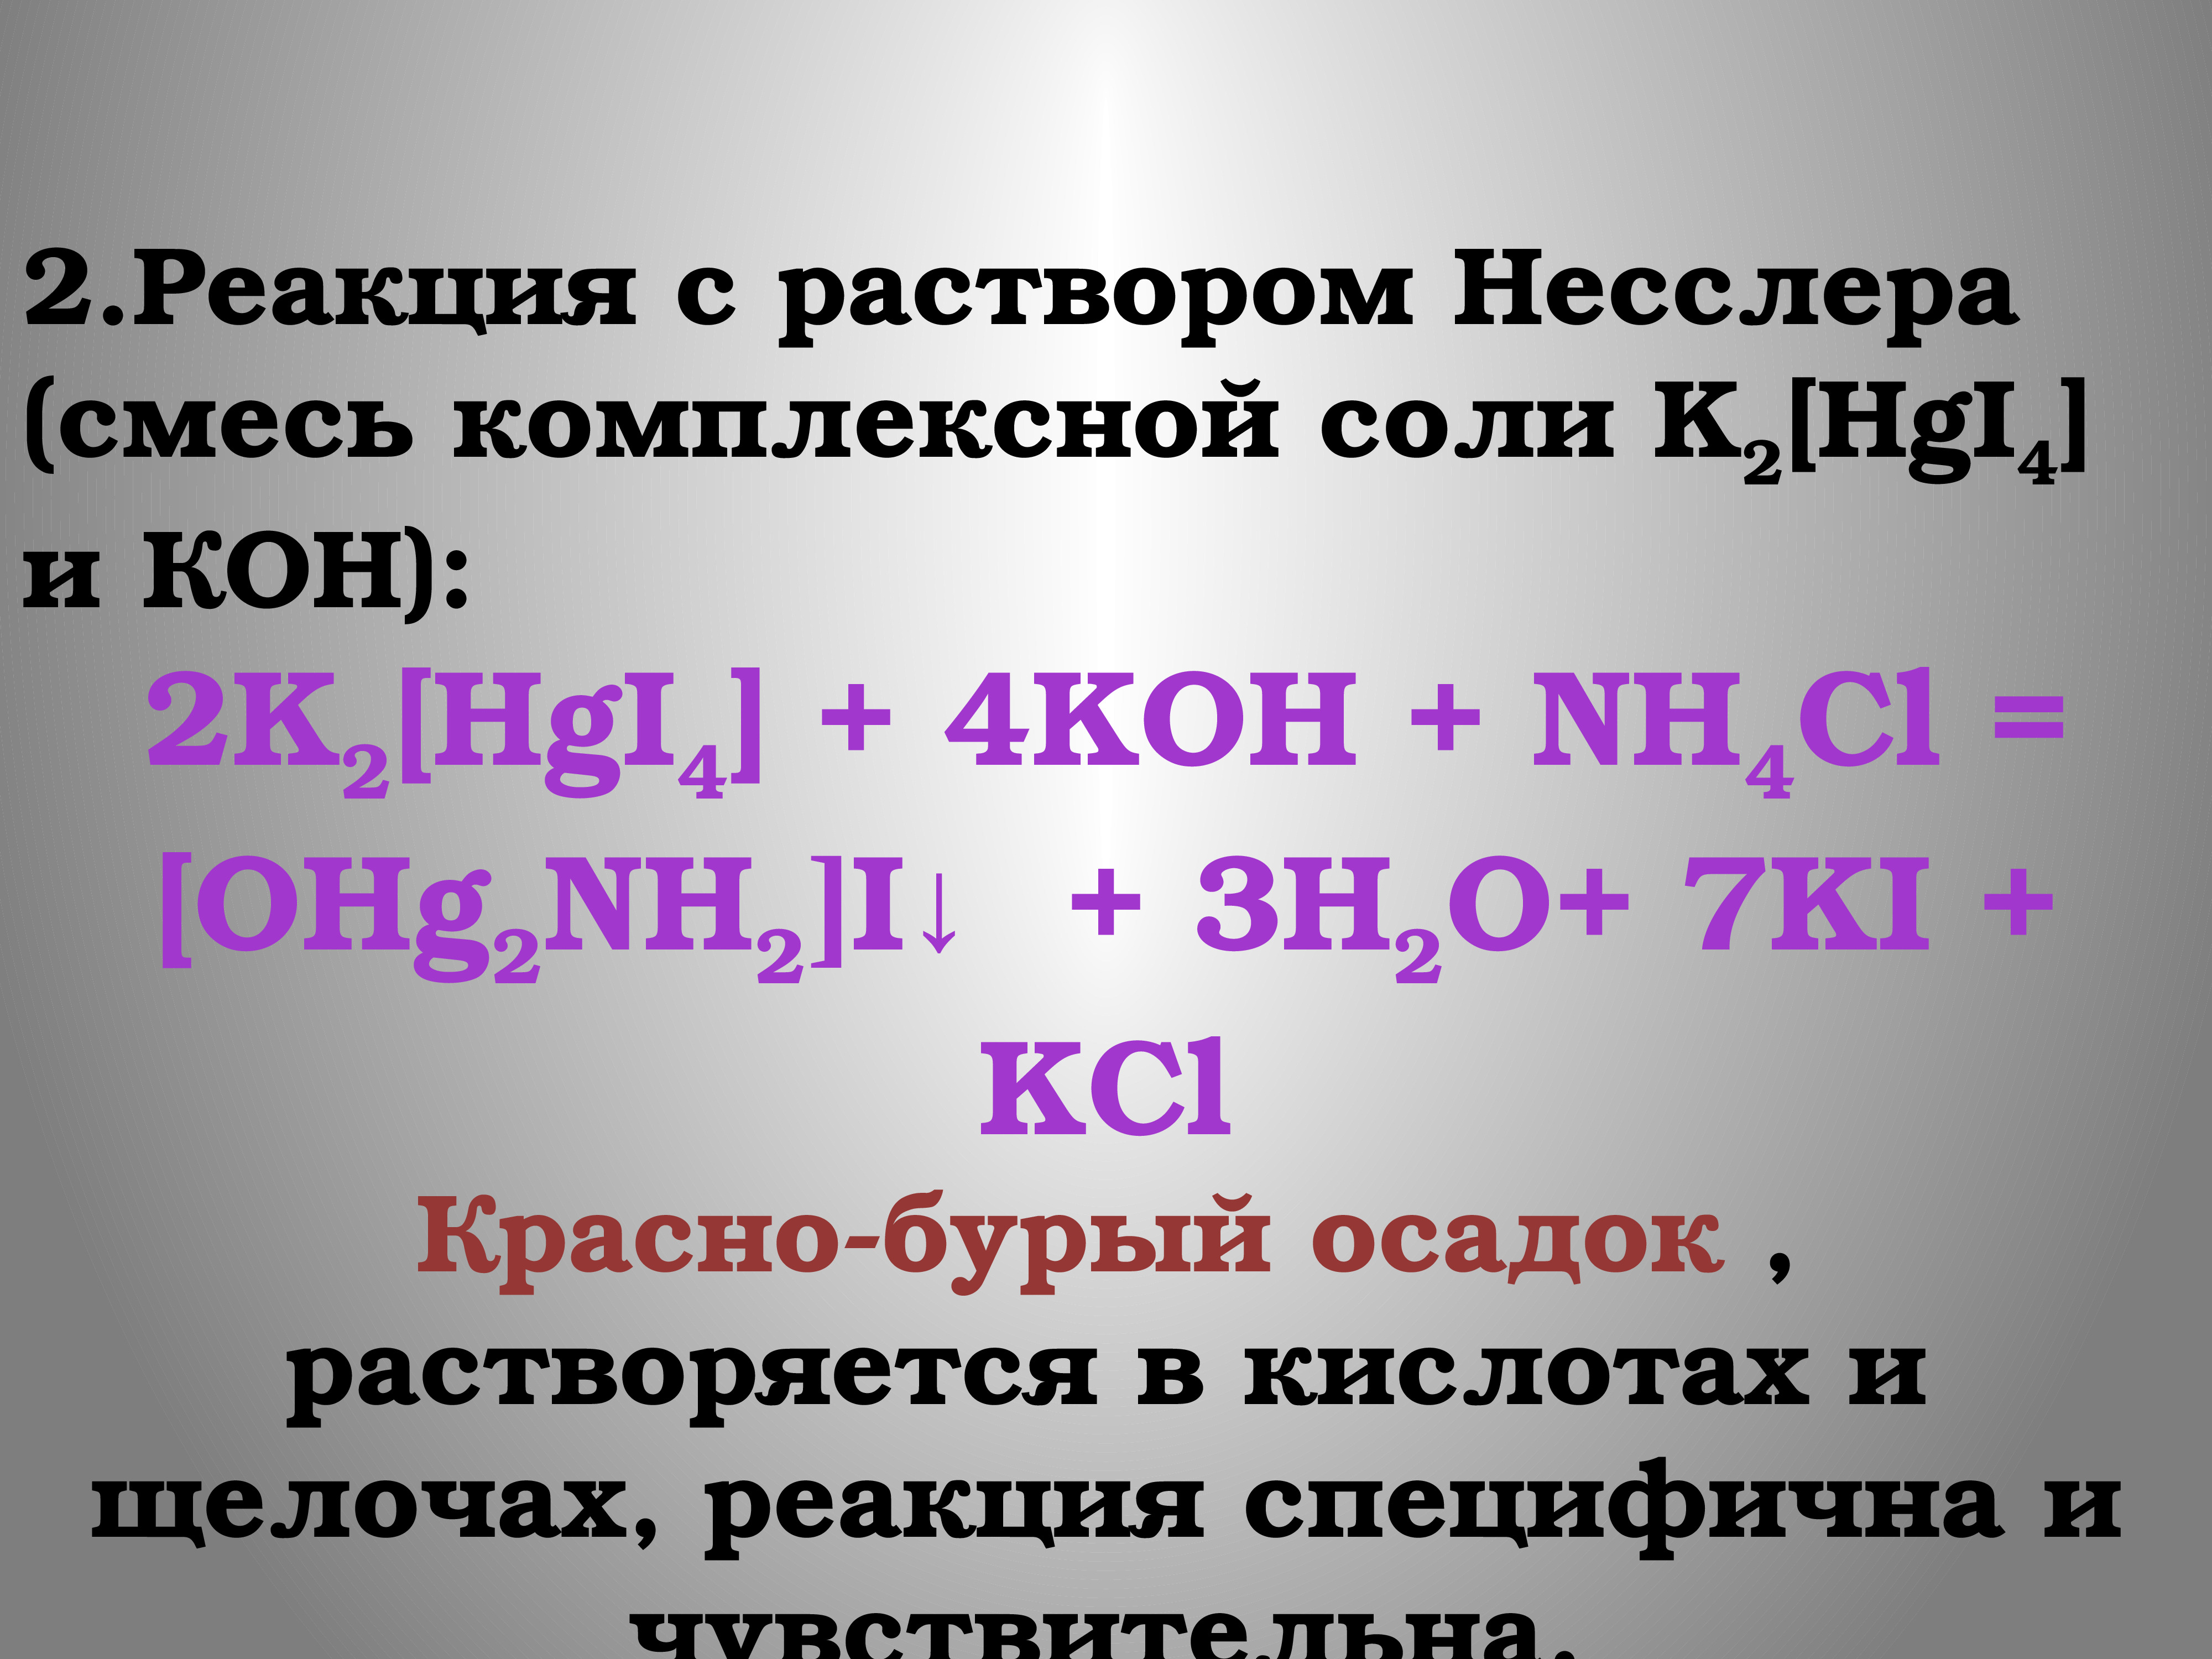 Качественными реакциями на катион аммония является. Реакция с раствором Несслера. K2[hgi4-HG. K2hgi4 Koh nh3. Nh4cl k2 hgi4 Koh.